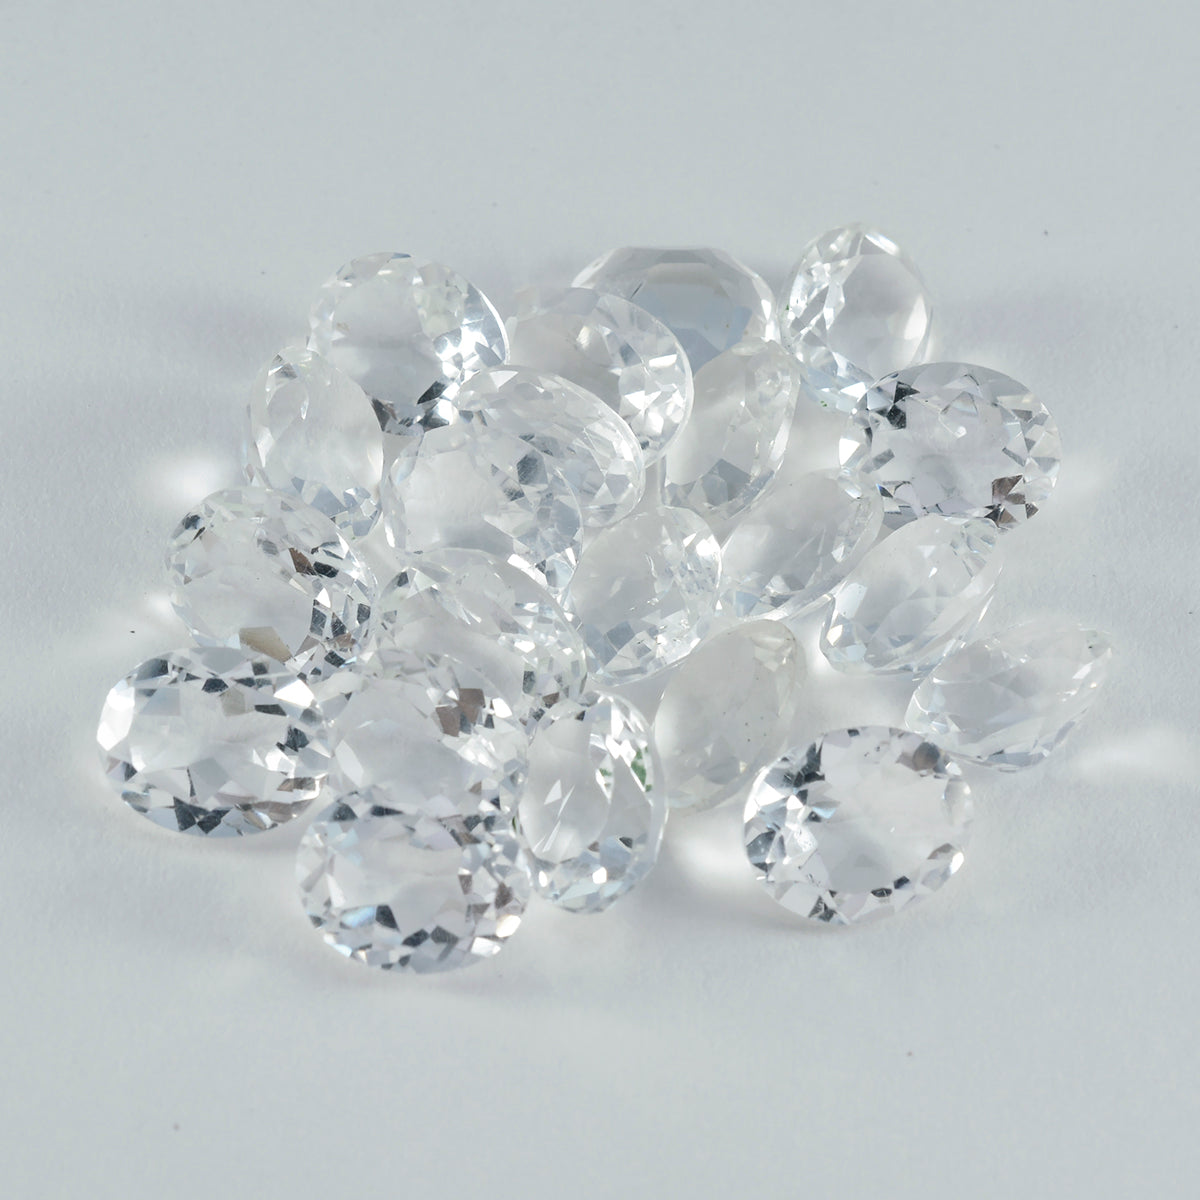 Riyogems – quartz cristal blanc à facettes 6x8mm, forme ovale, belles pierres précieuses de qualité, 1 pièce